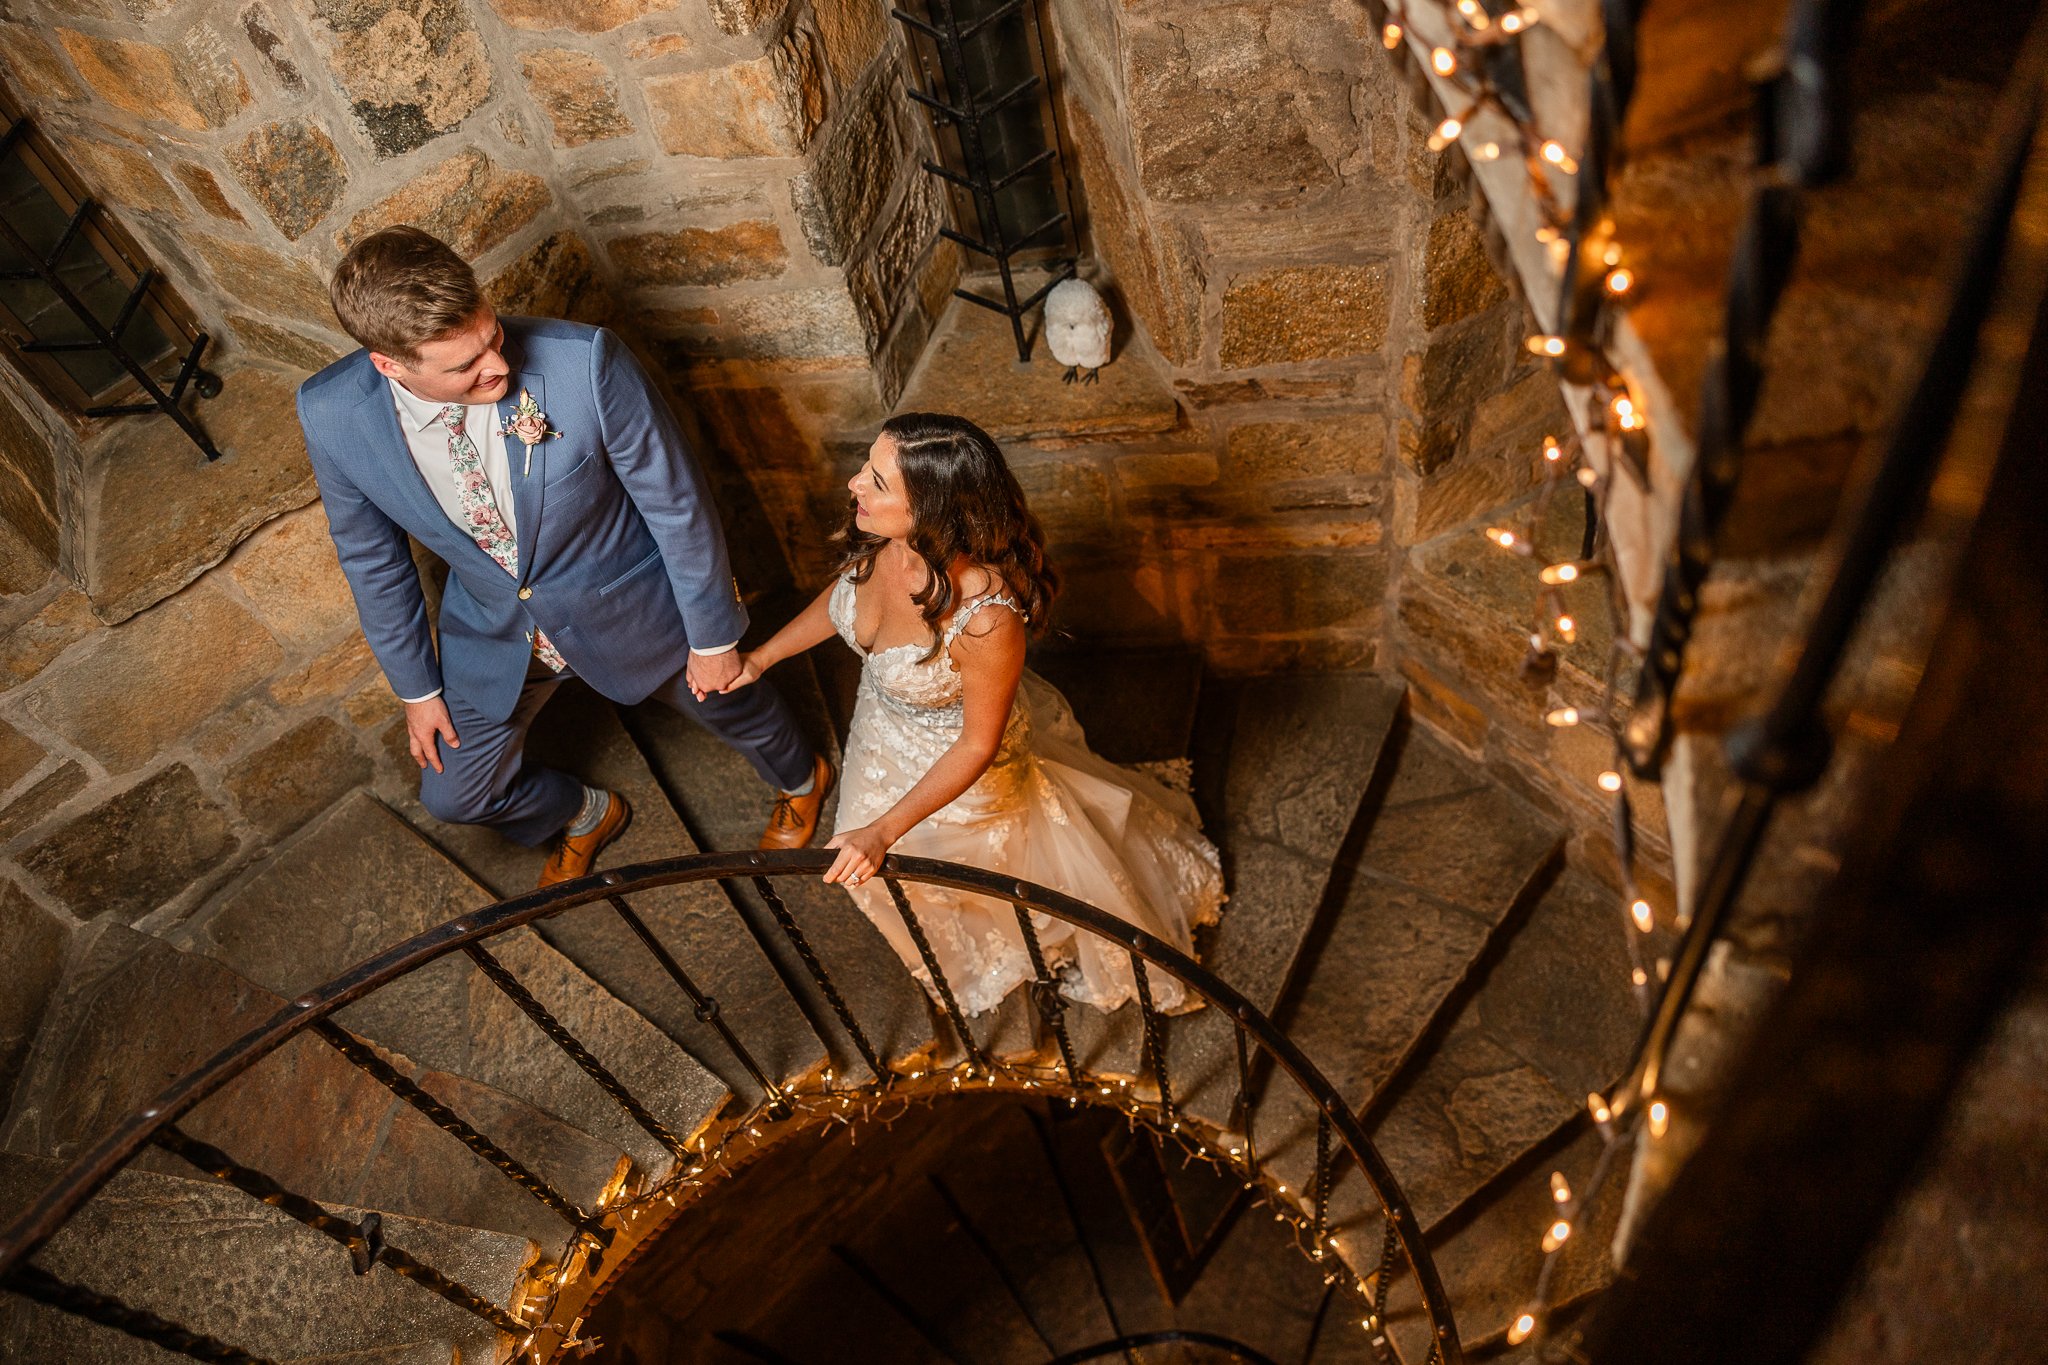 cloisters-castle-wedding-photos-1020.jpg